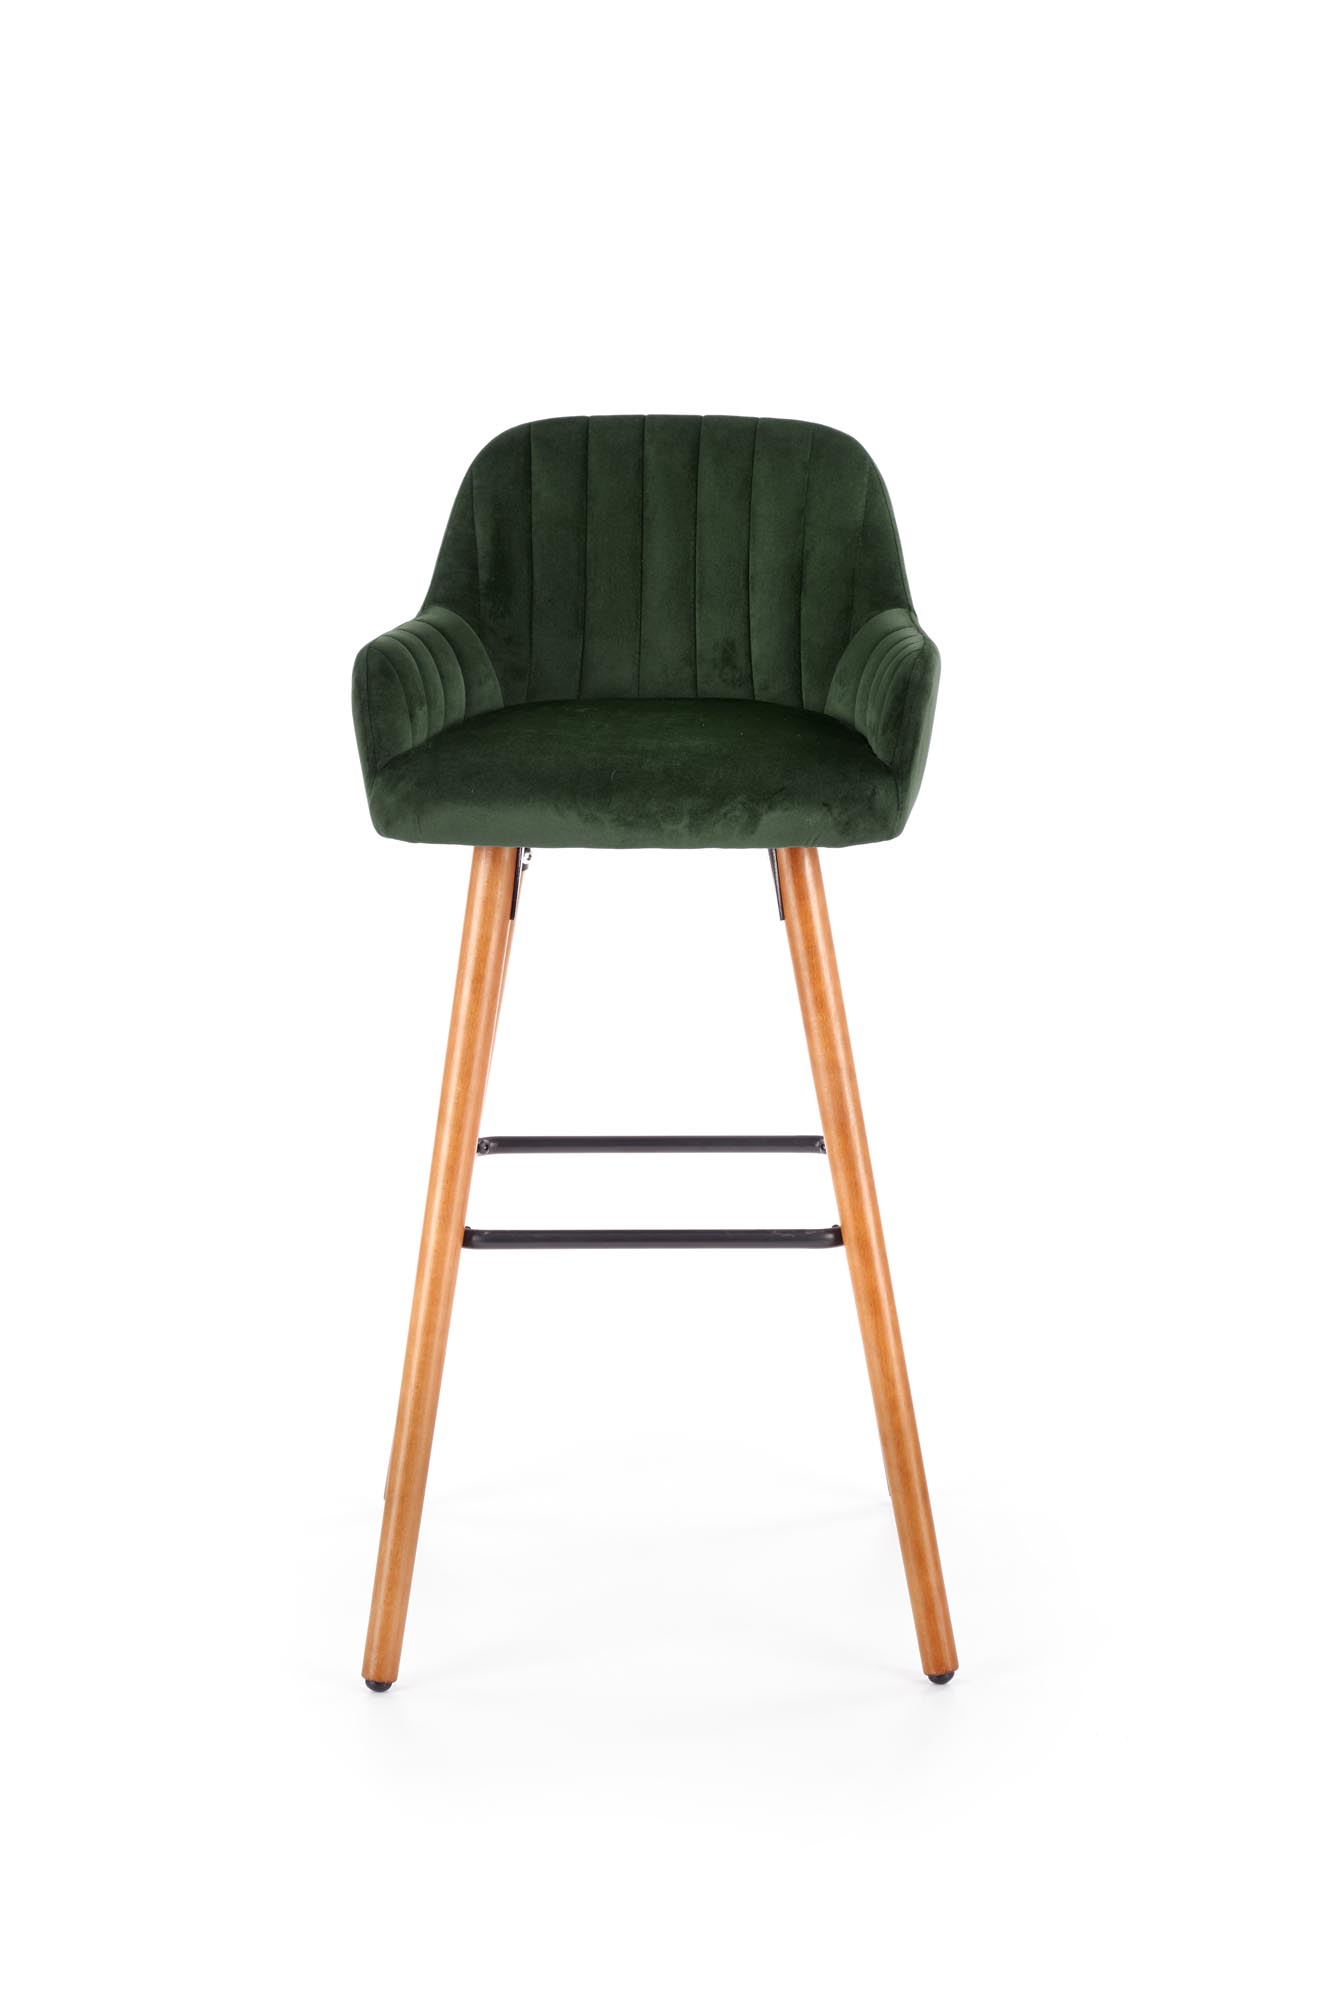 Barová stolička H39 - orech / zelená h93 Barová stolička Nohy - Orech, Čalúnenie - c. Zelený